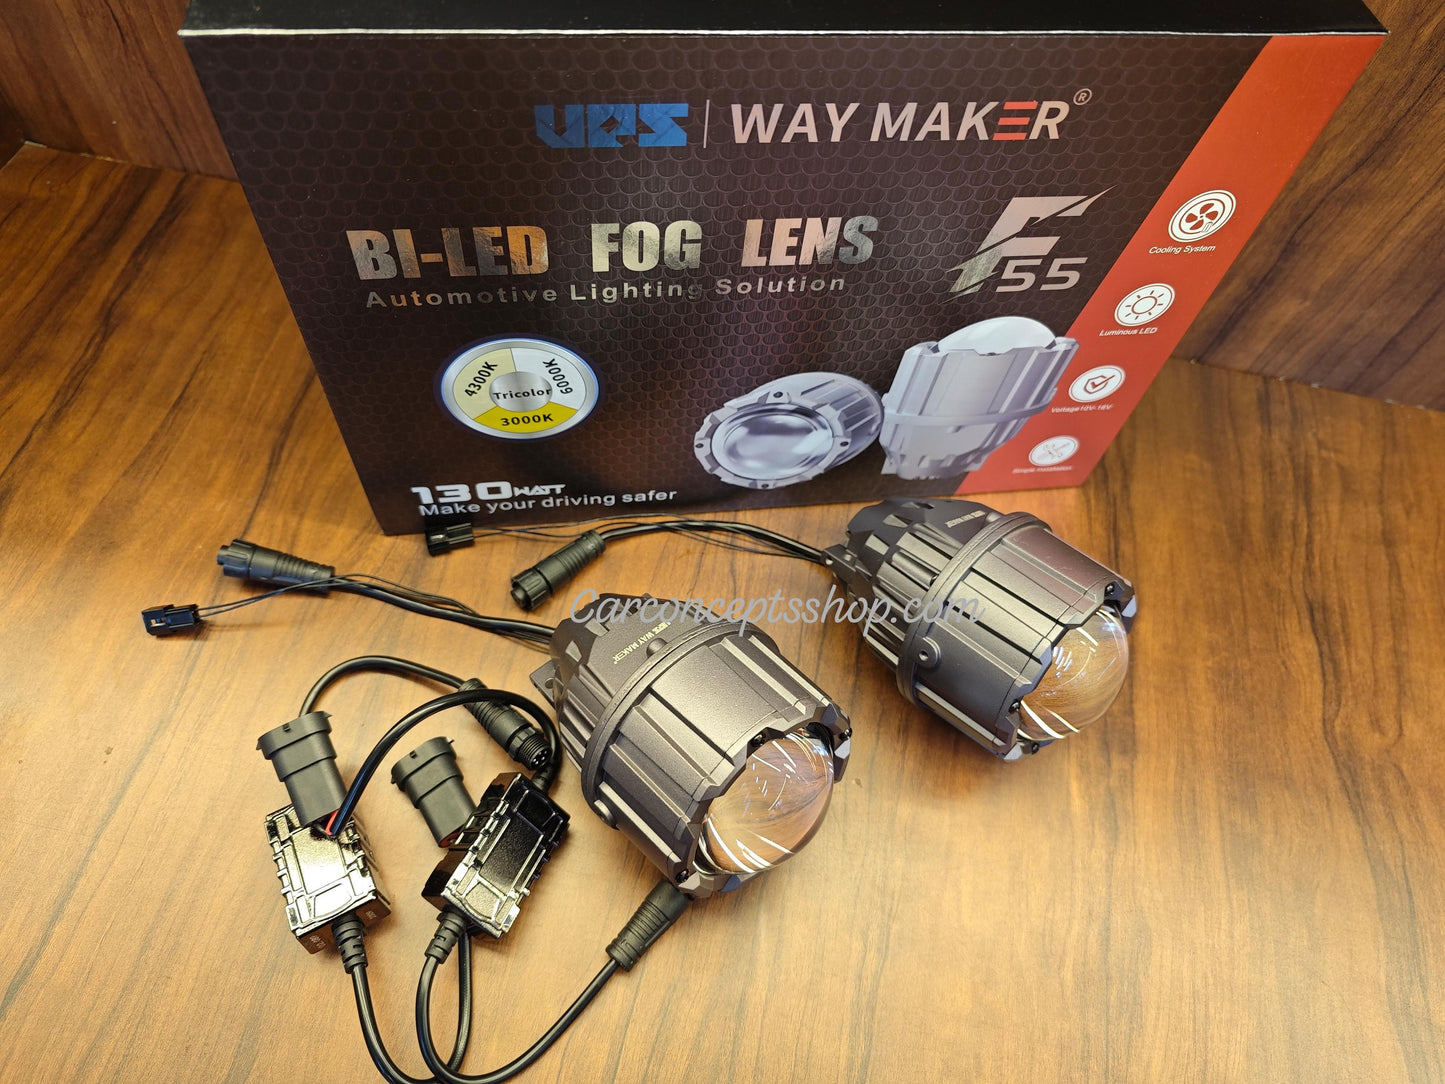 ups way maker F55 bi-led projector fog lens tri color